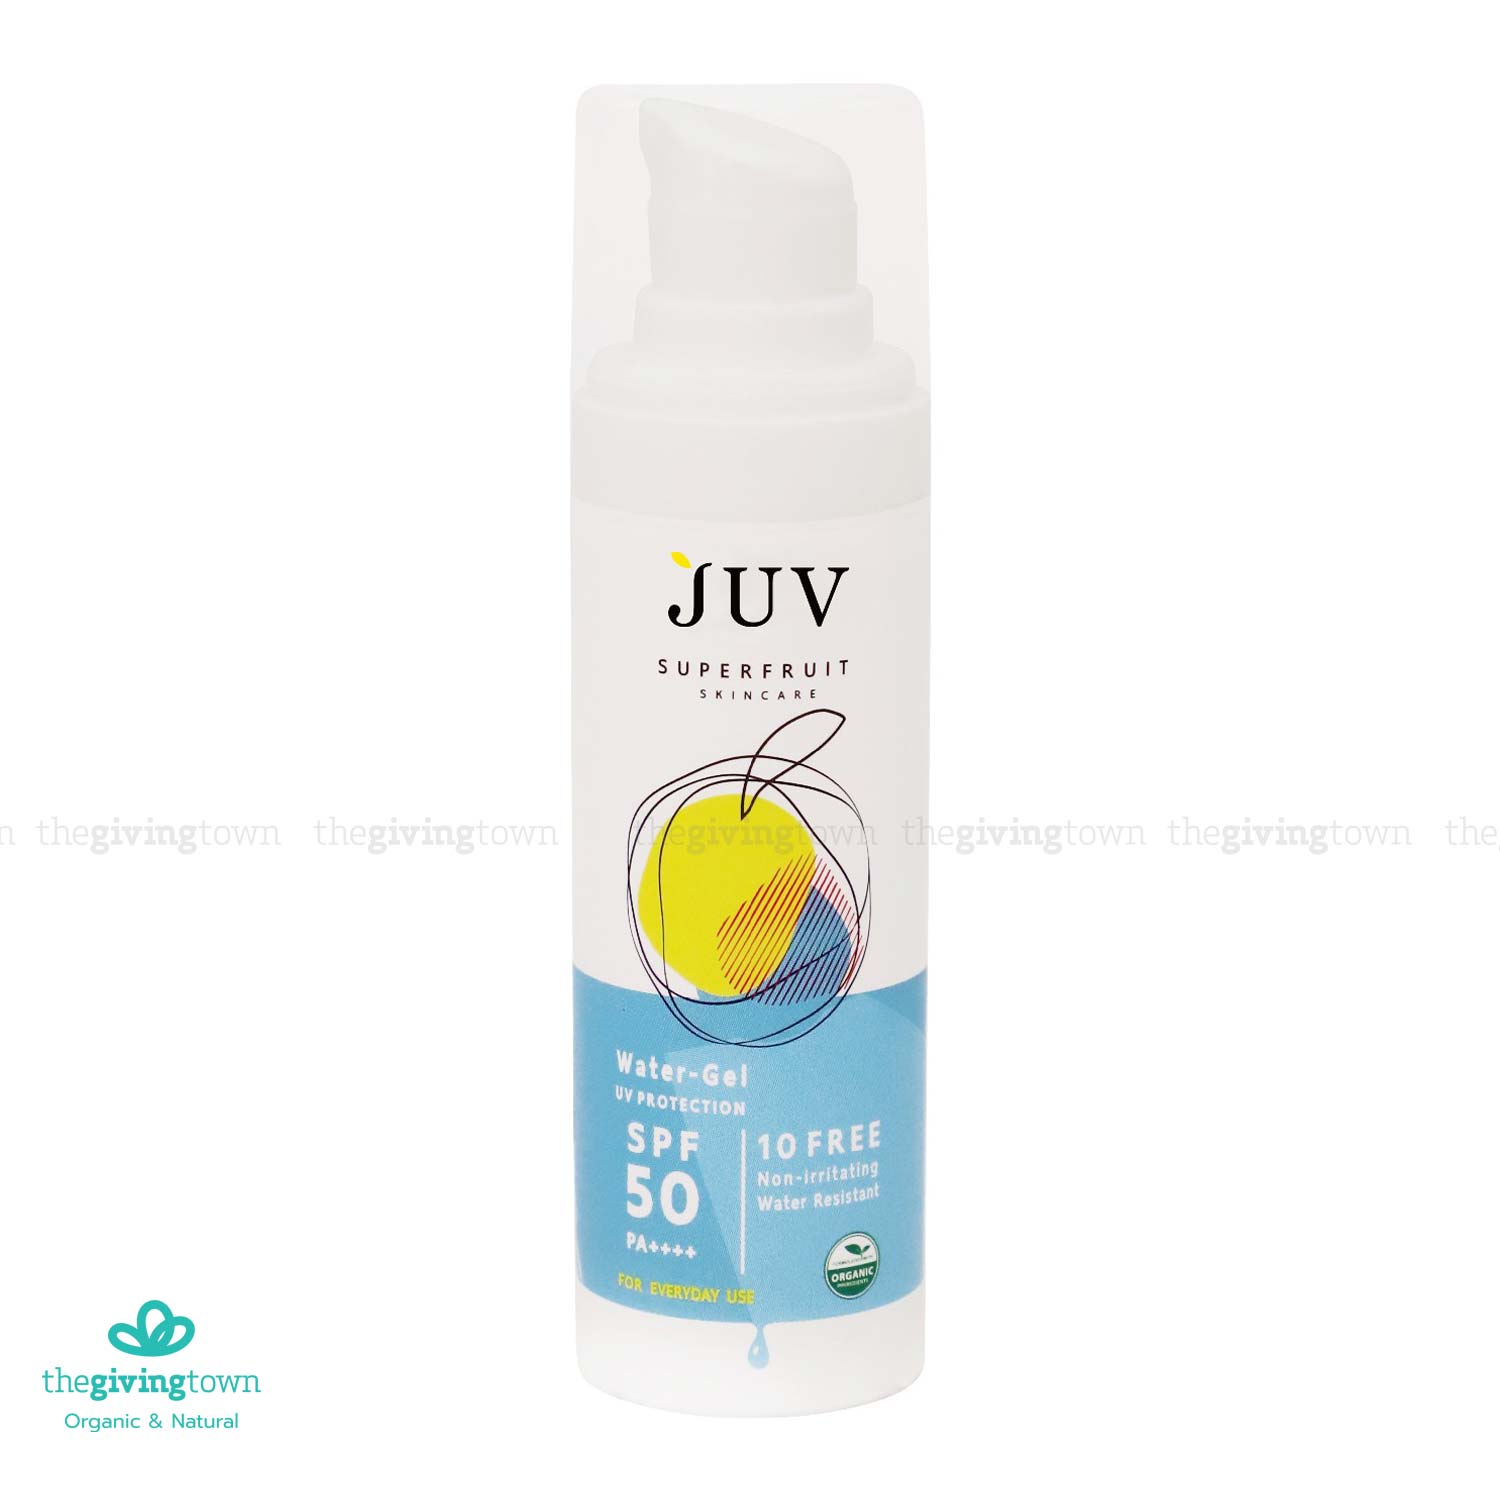 ครีมกันแดด JUV Superfruit Sunscreen Water Gel UV Protection SPF 50 PA++++ 30 มล. กันแดดสูตรน้ำ